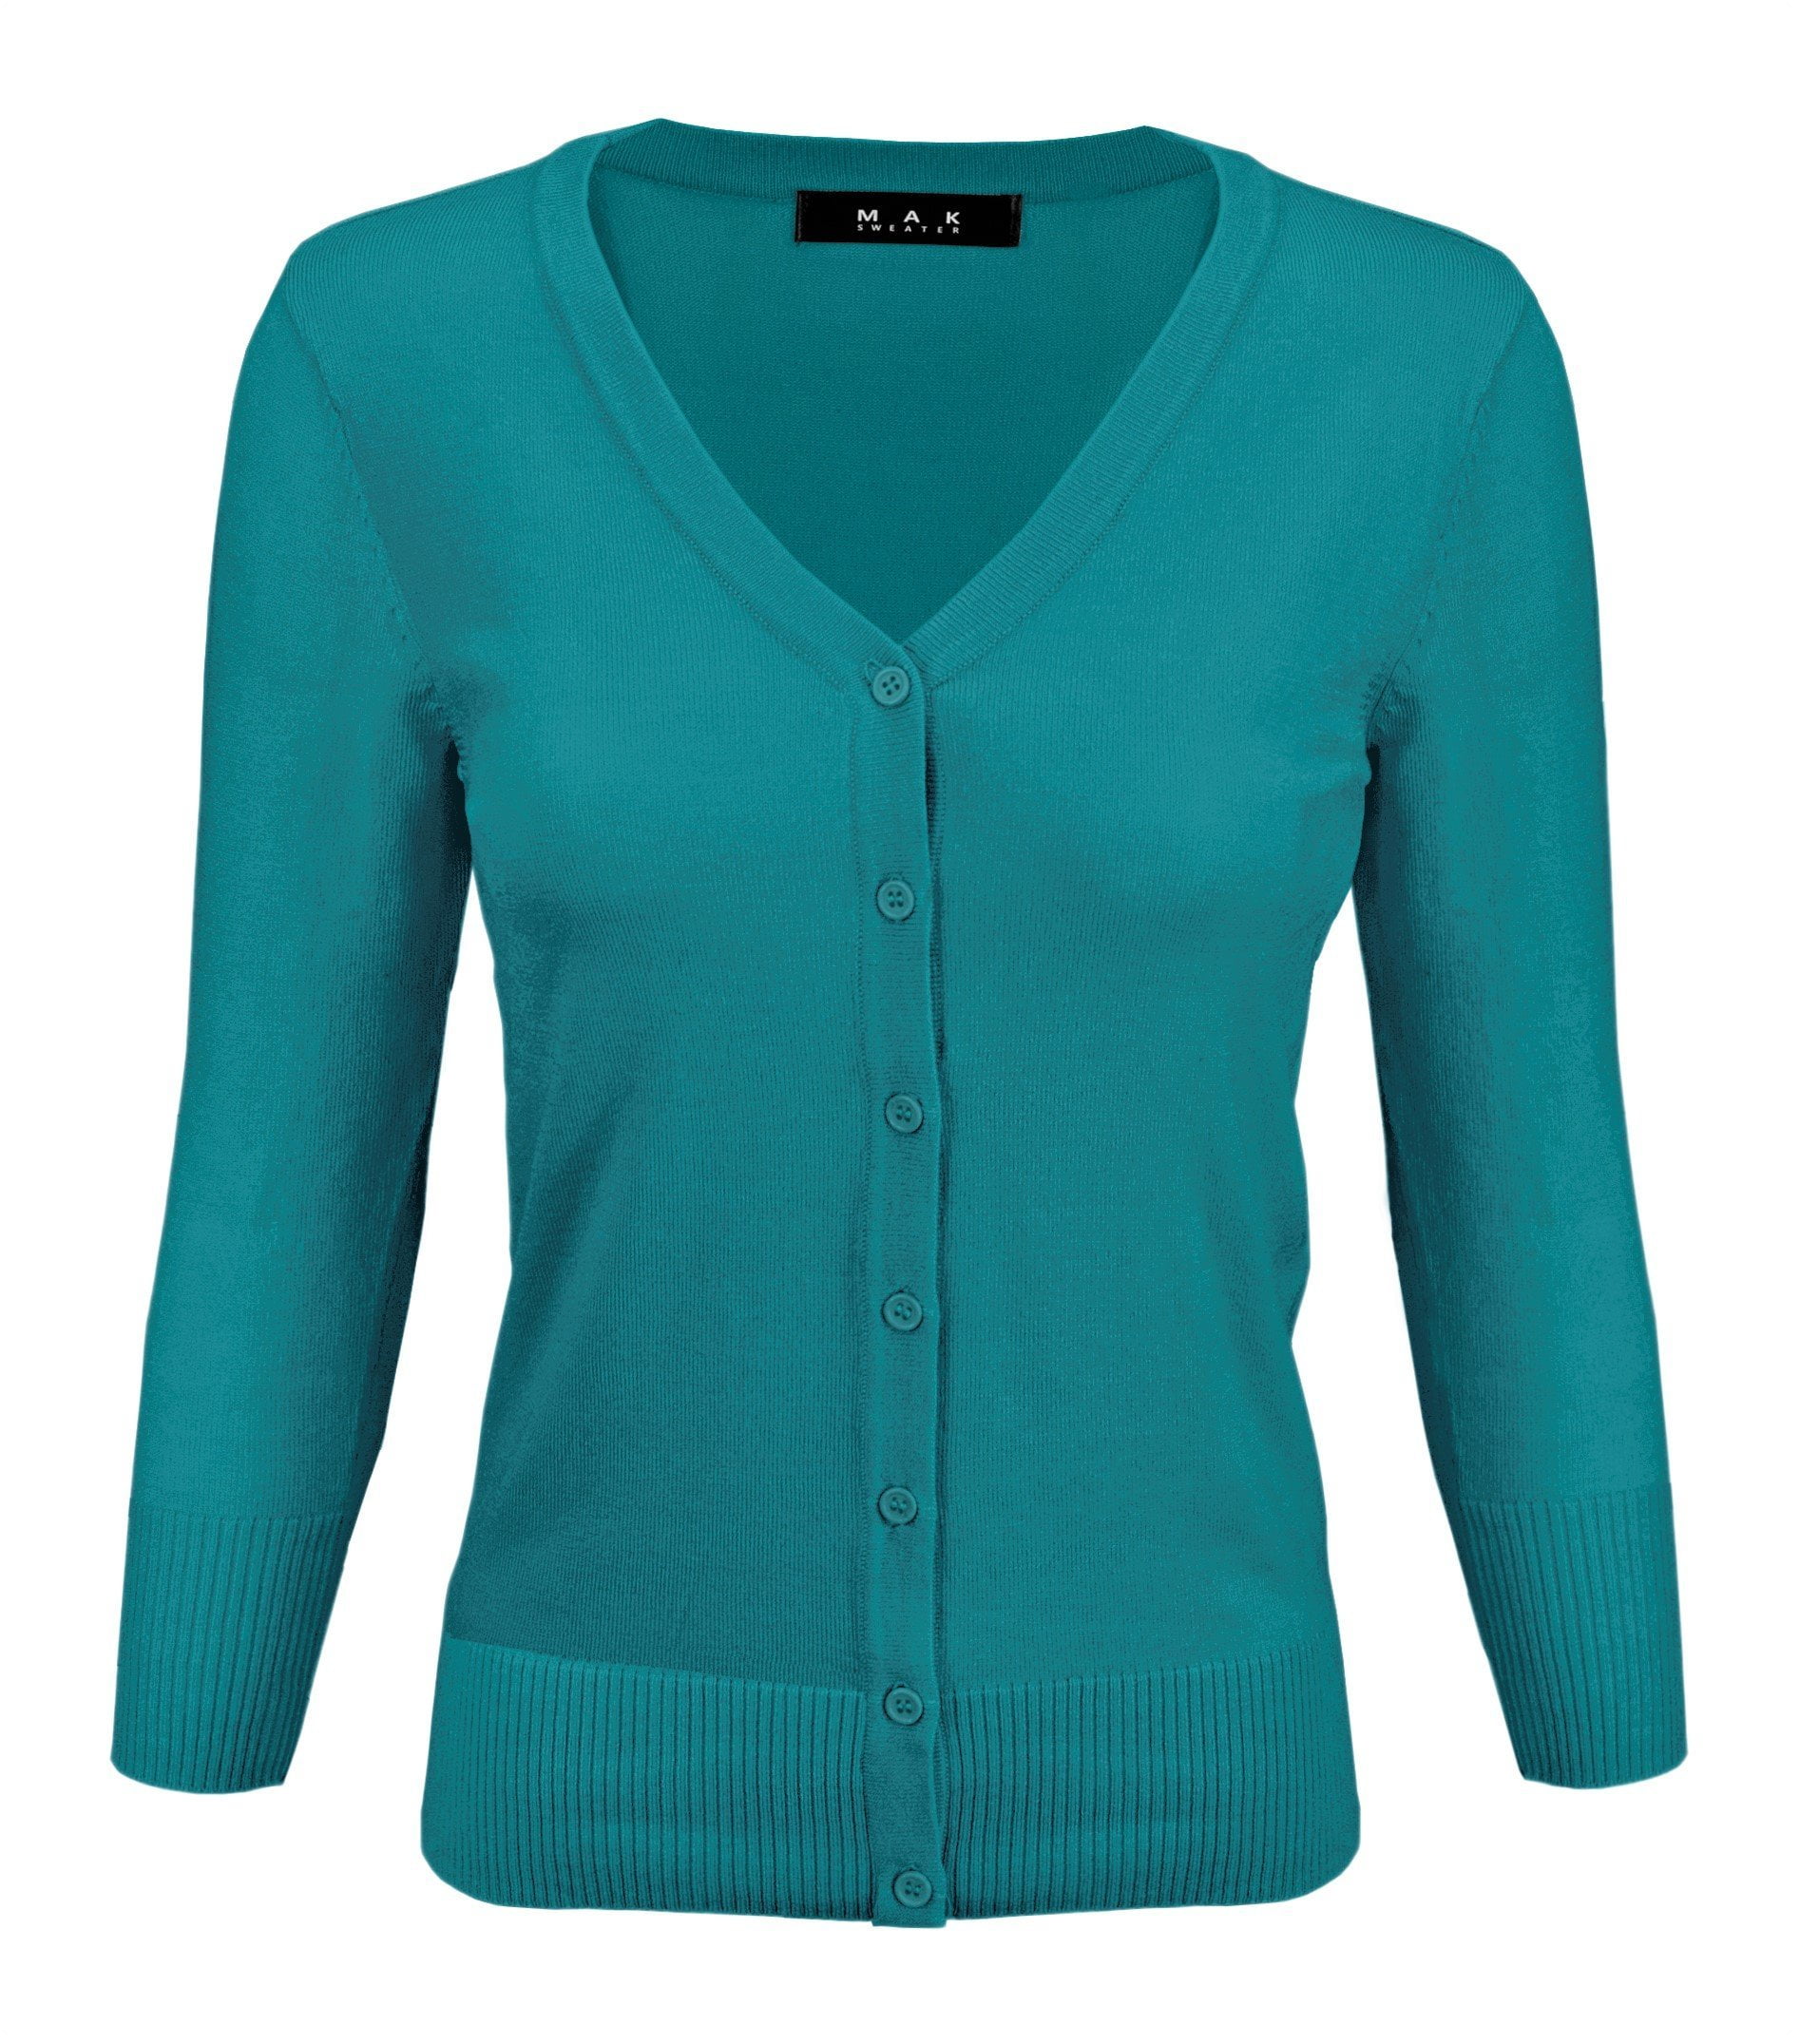 Yemak - YEMAK Women's Knit Cardigan Sweater – 3/4 Sleeve V-Neck Basic ...